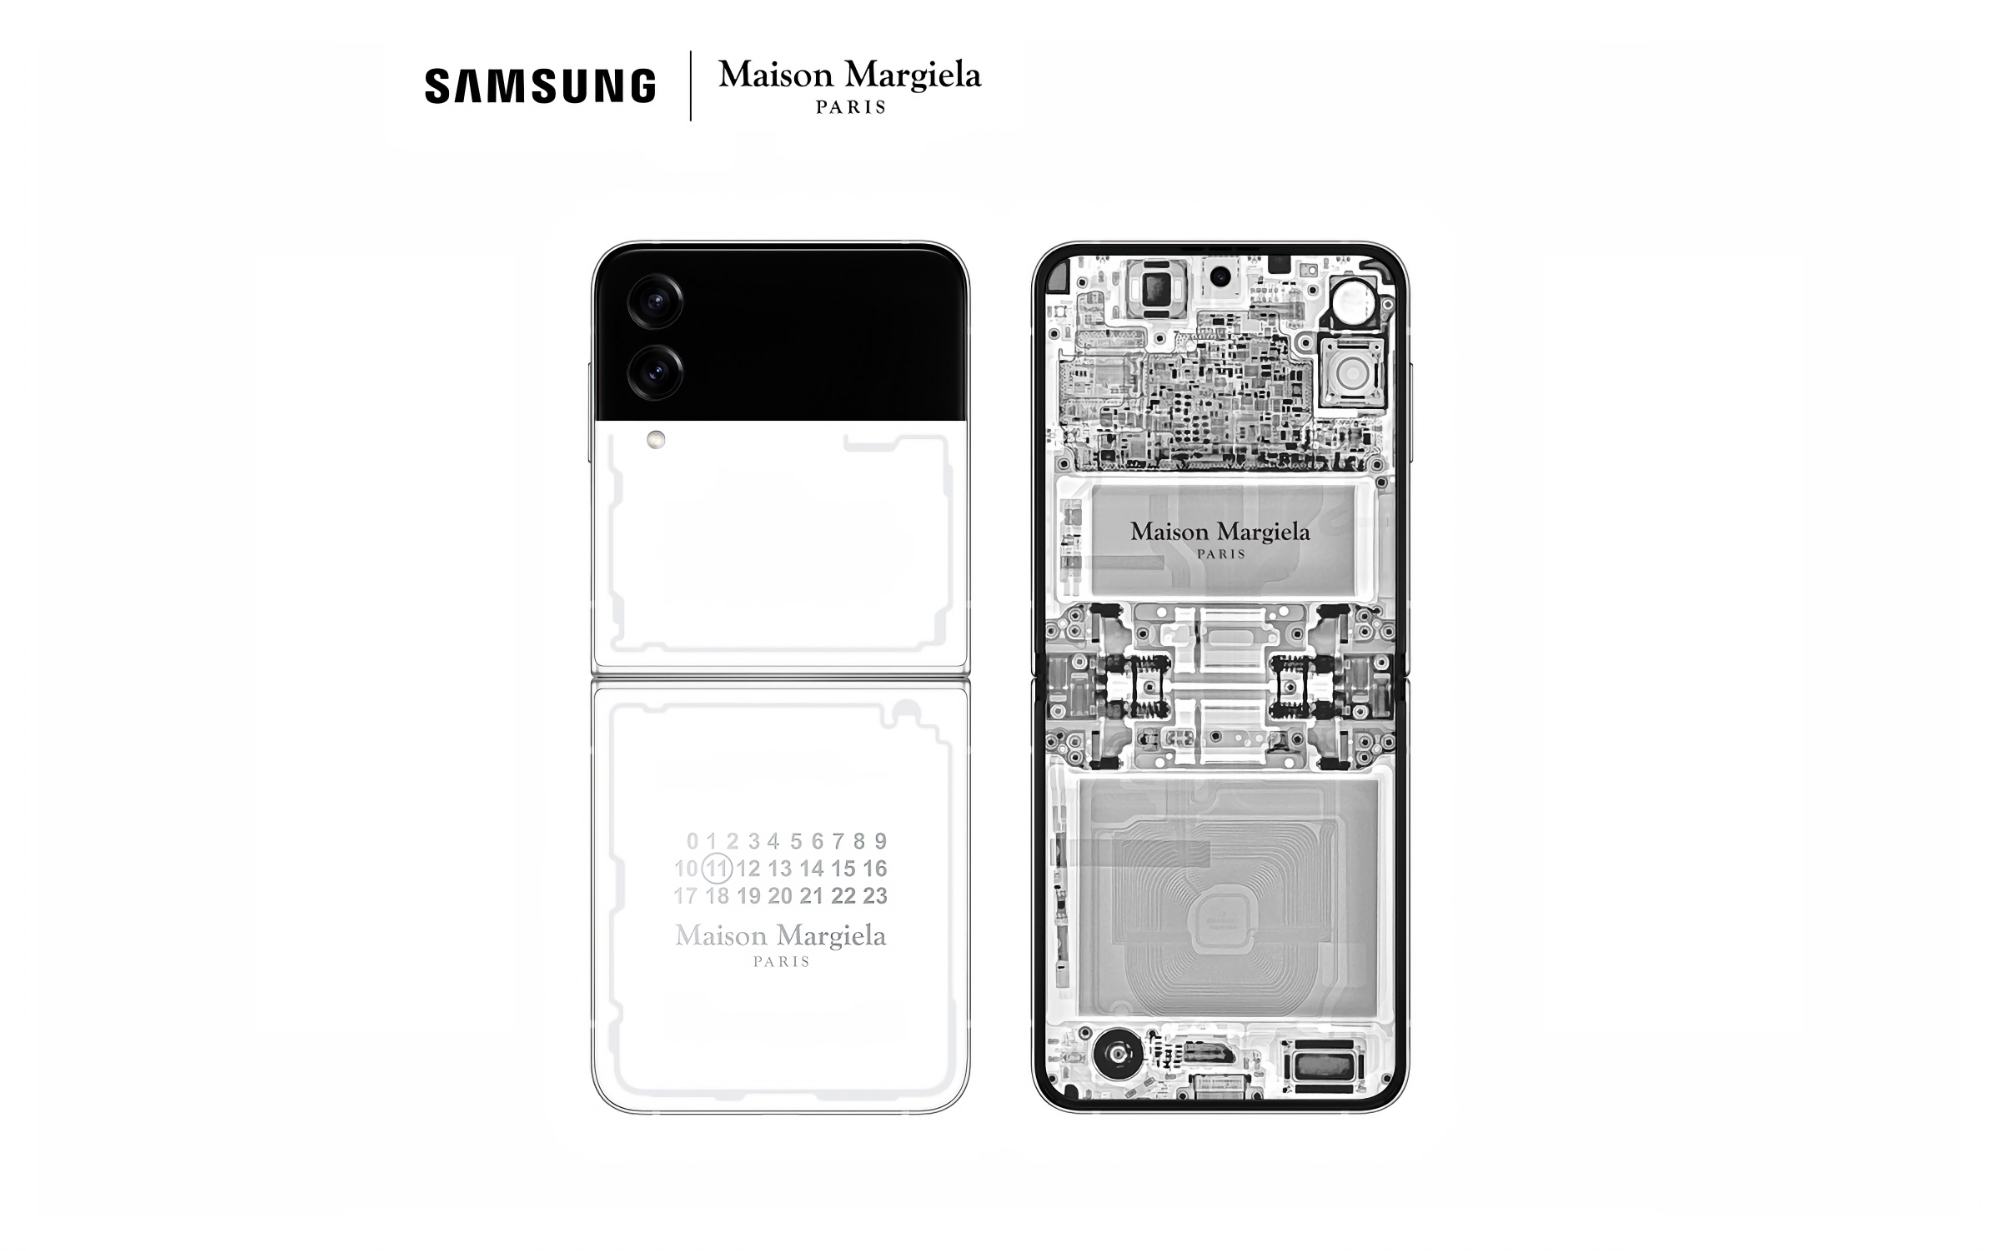 Samsung dijo cuánto costará el clamshell Galaxy Flip 4 Maison Margiela Edition